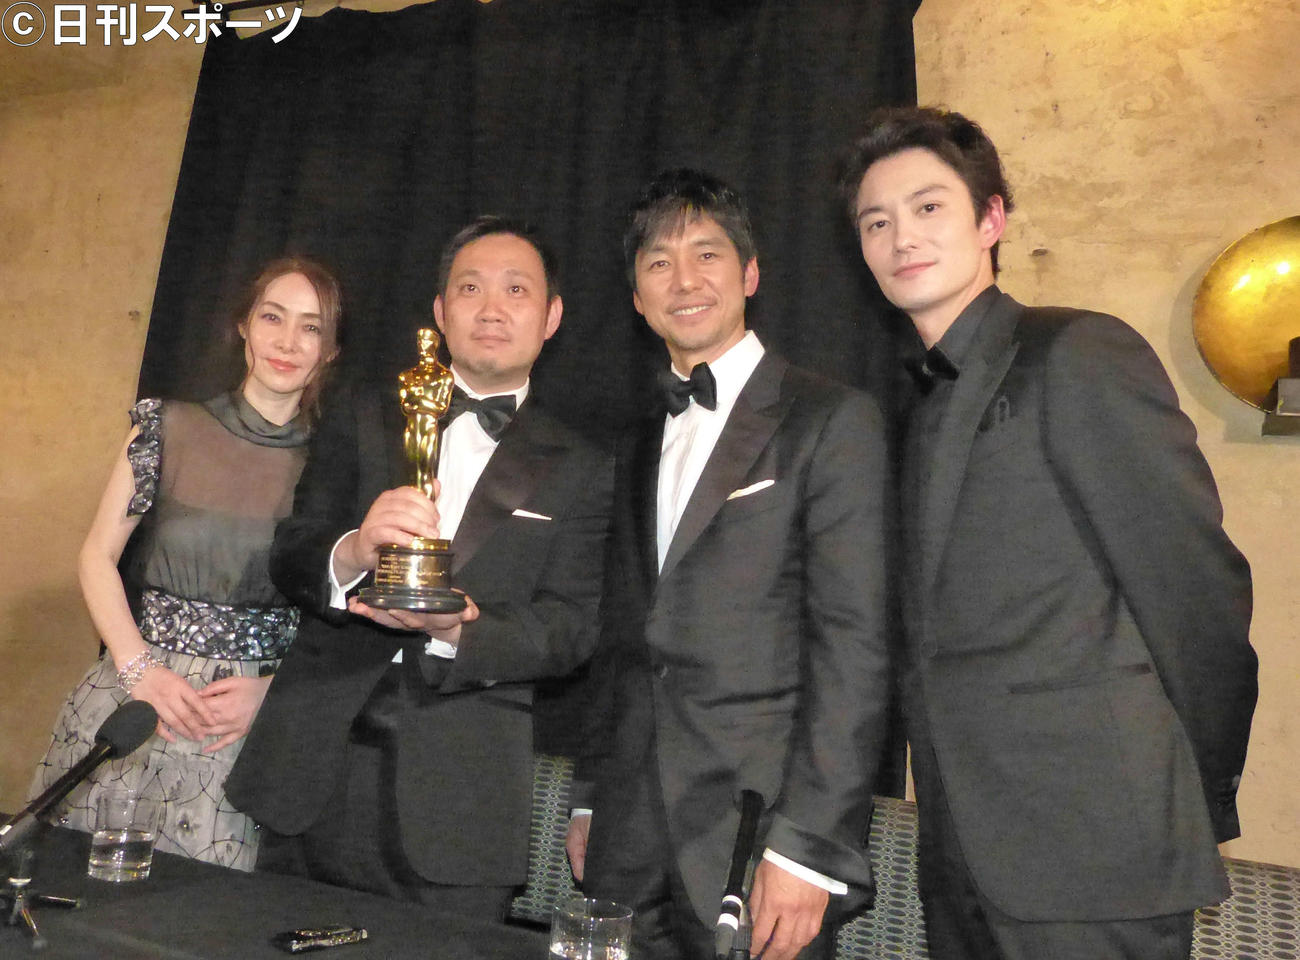 アカデミー賞授賞式後に取材に応じた、左から霧島れいか、濱口竜介監督、西島秀俊、岡田将生